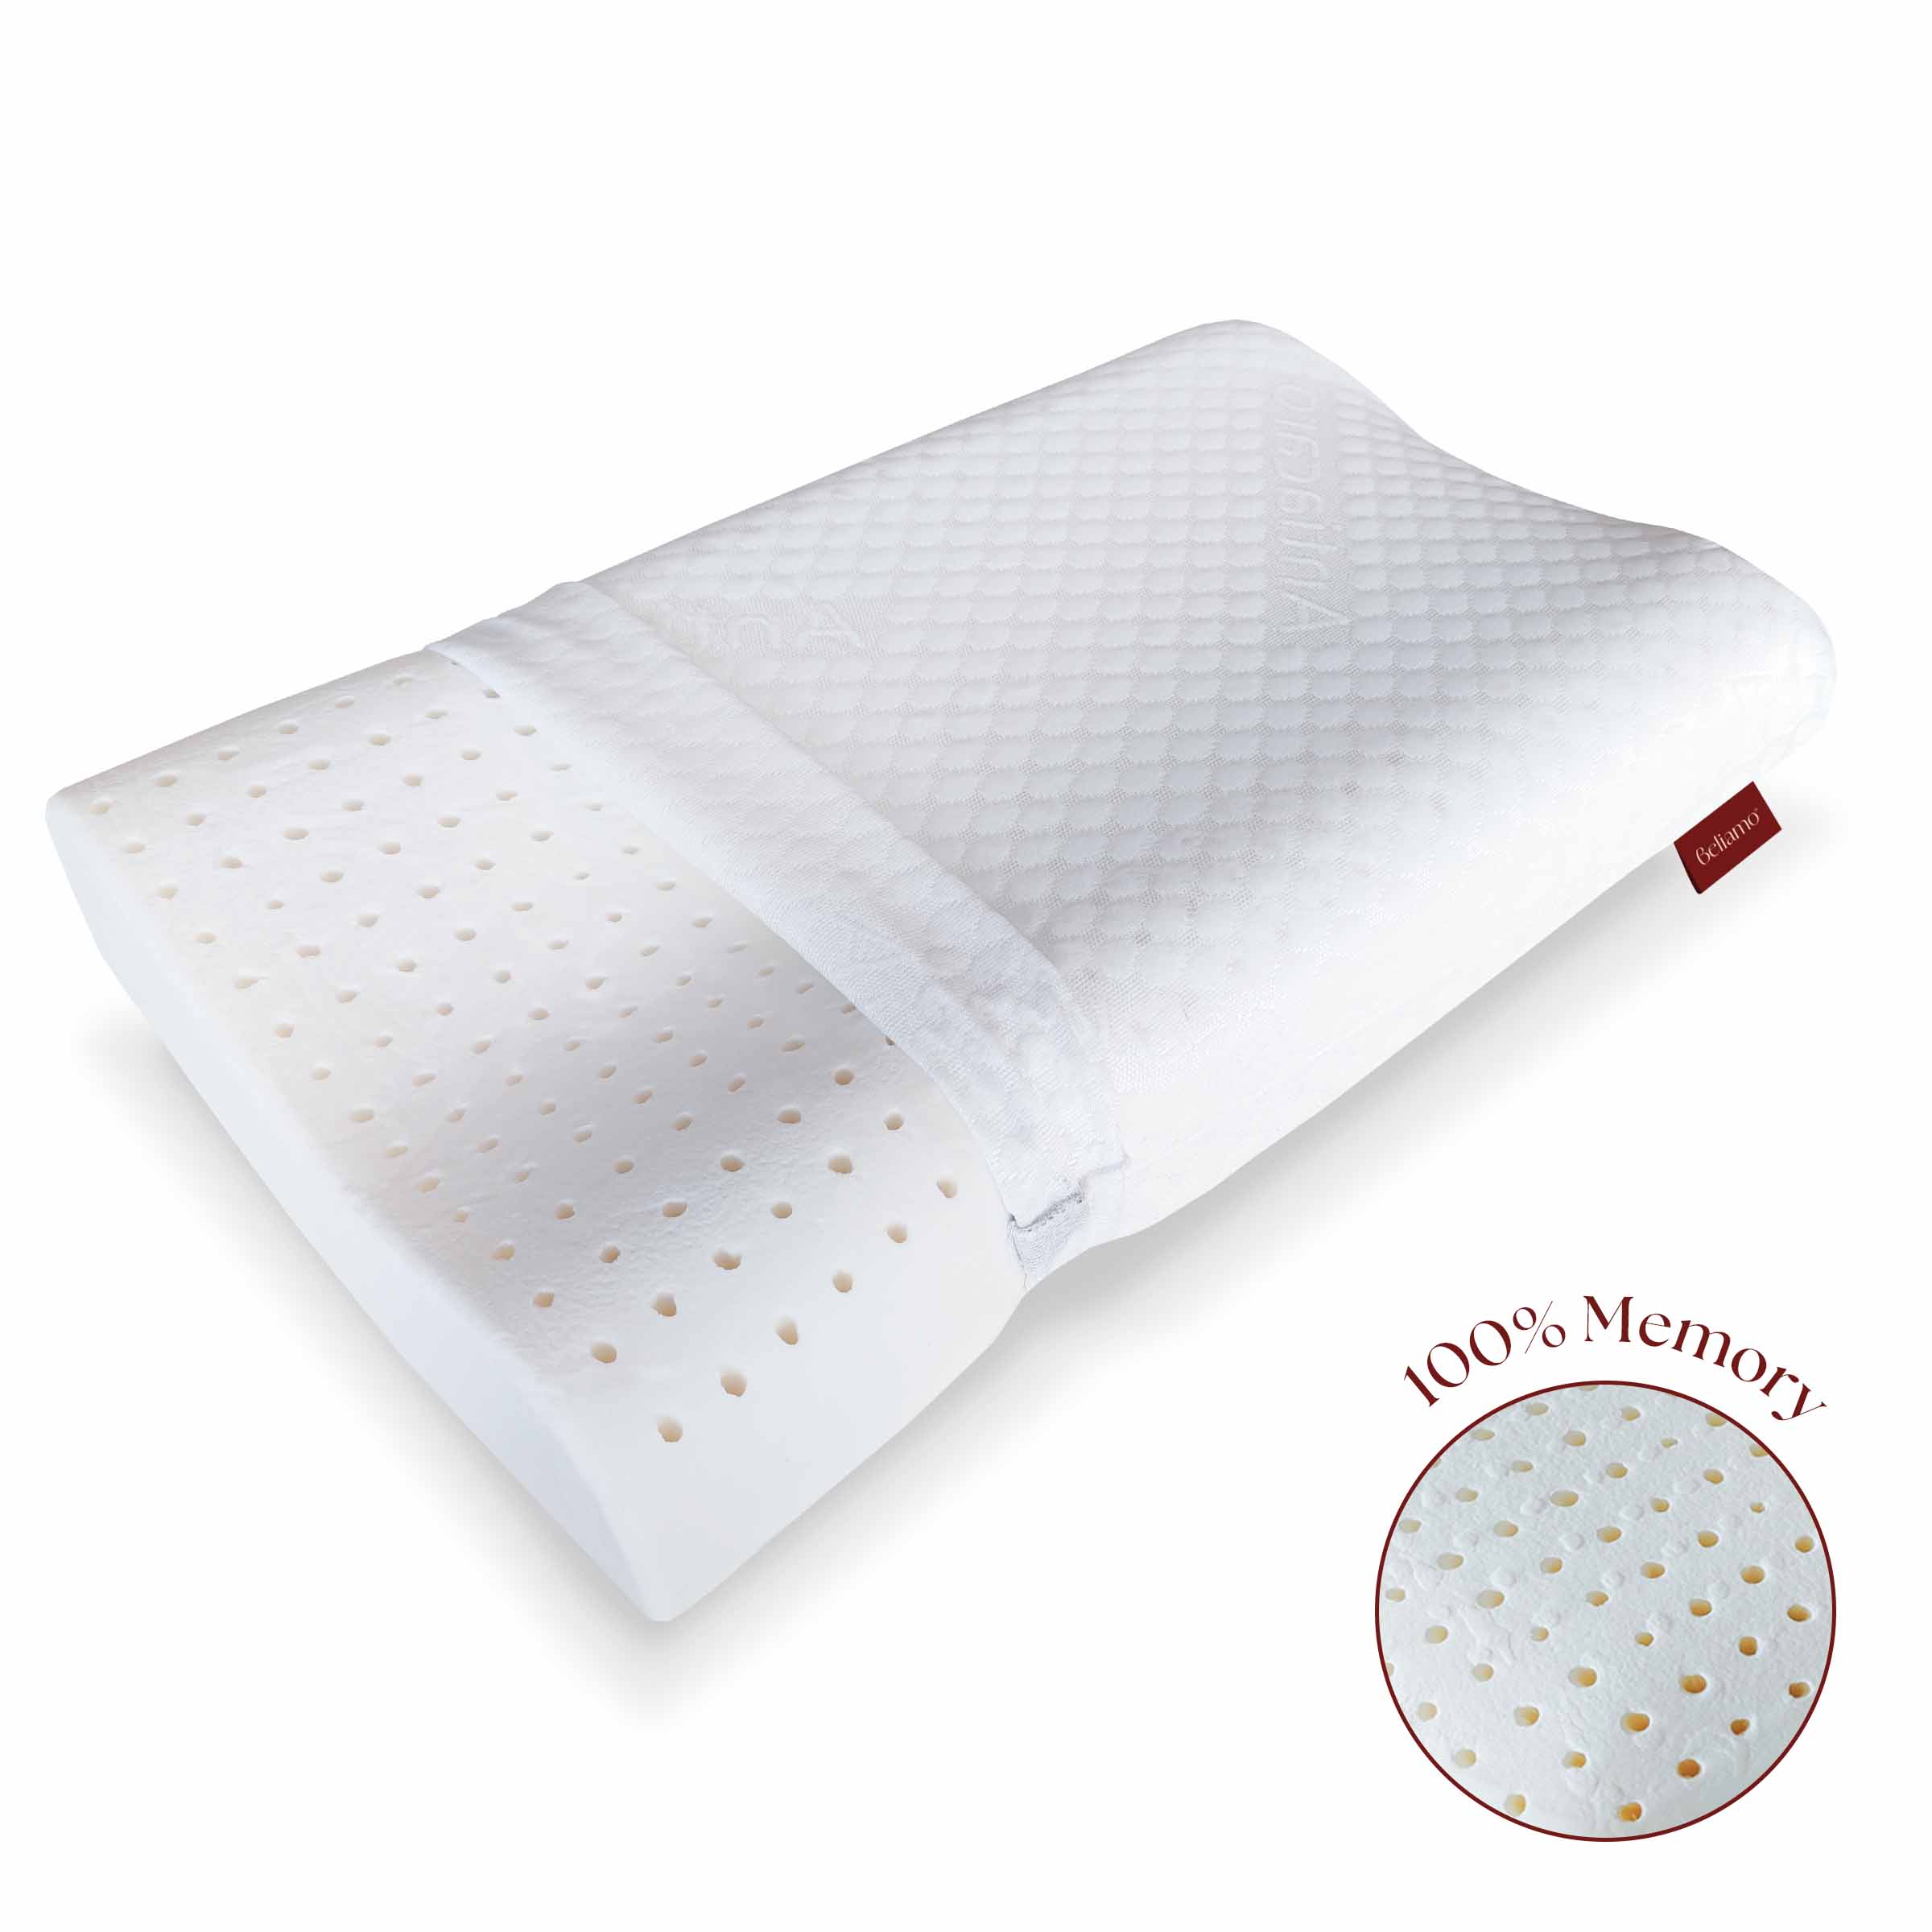 Cuscino cervicale Bologna in memory foam di Beliamo, progettato per offrire supporto ergonomico e comfort durante il sonno